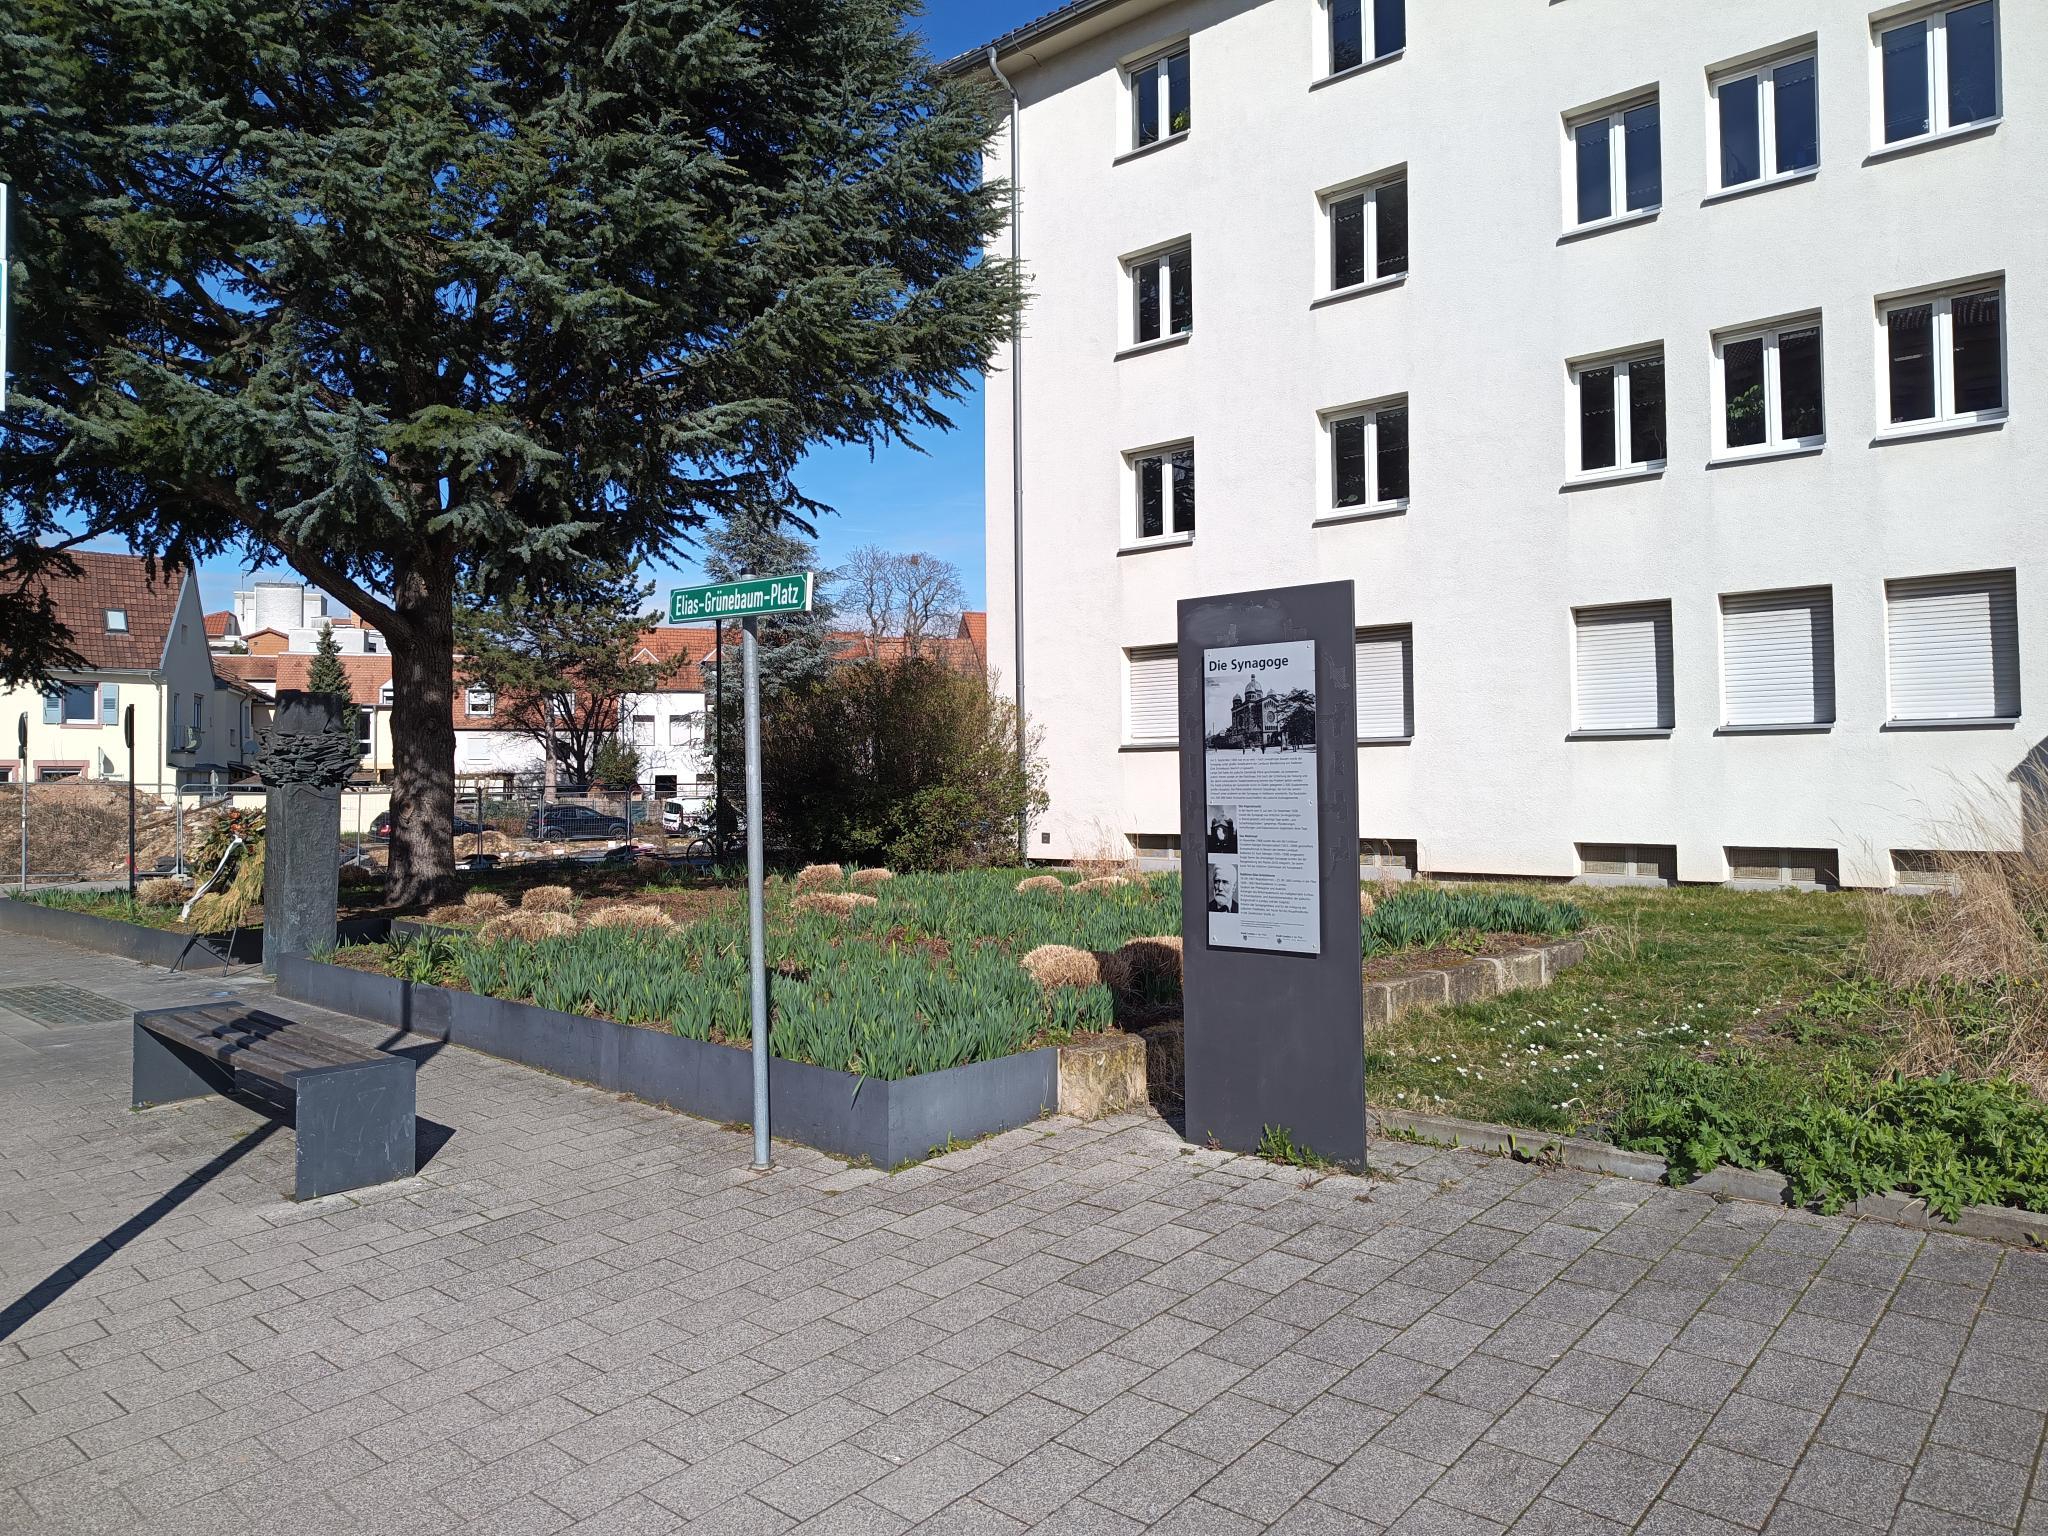 Datei:Elias-Grünebaum-Platz Landau 1.jpeg